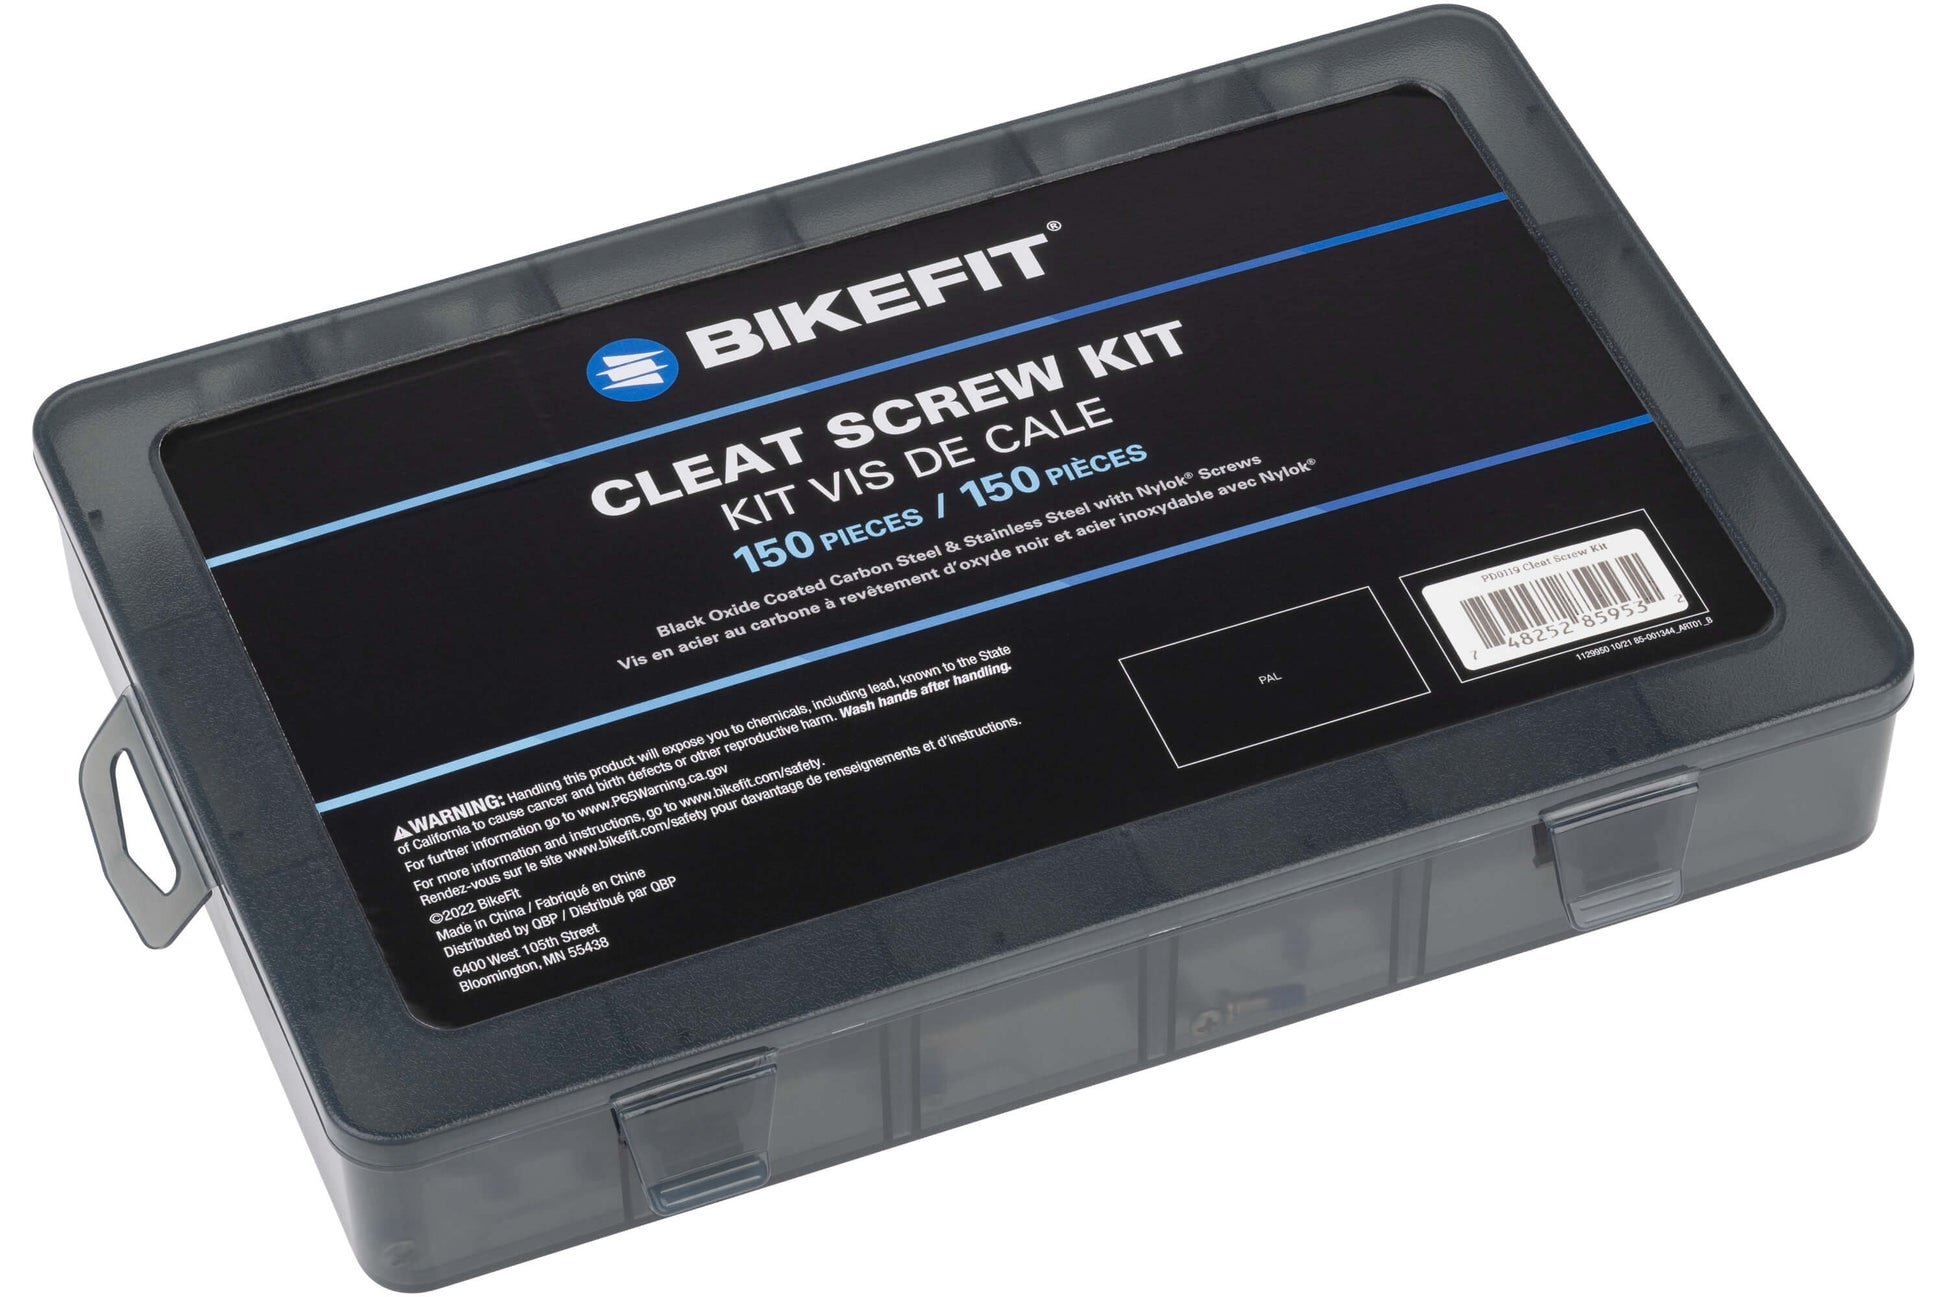 BikeFit Cleat Screw Kit - Kit box shown closed